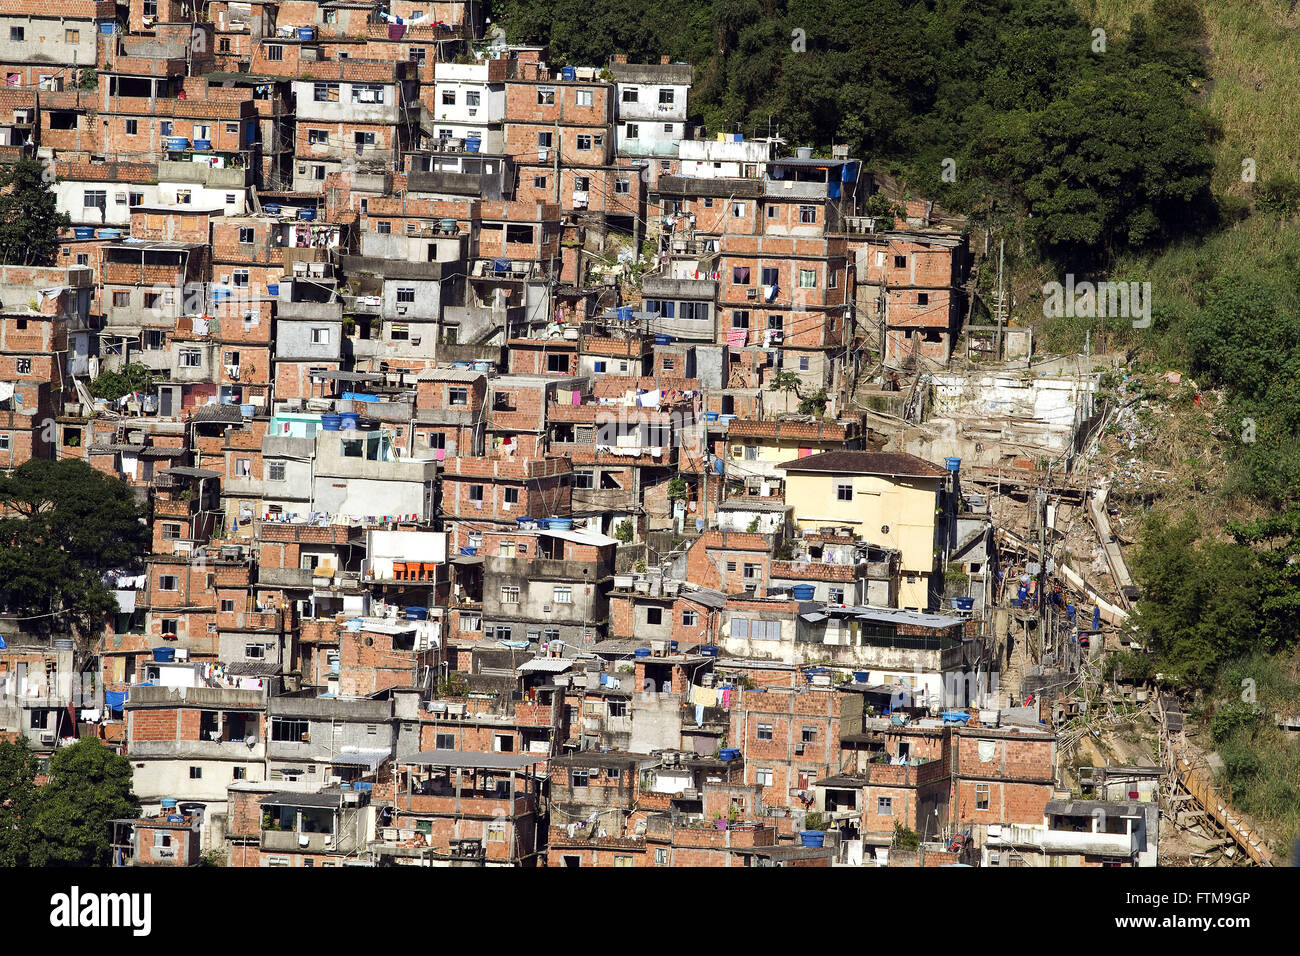 View of the Rocinha slum in the city of Rio de Janeiro Stock Photo